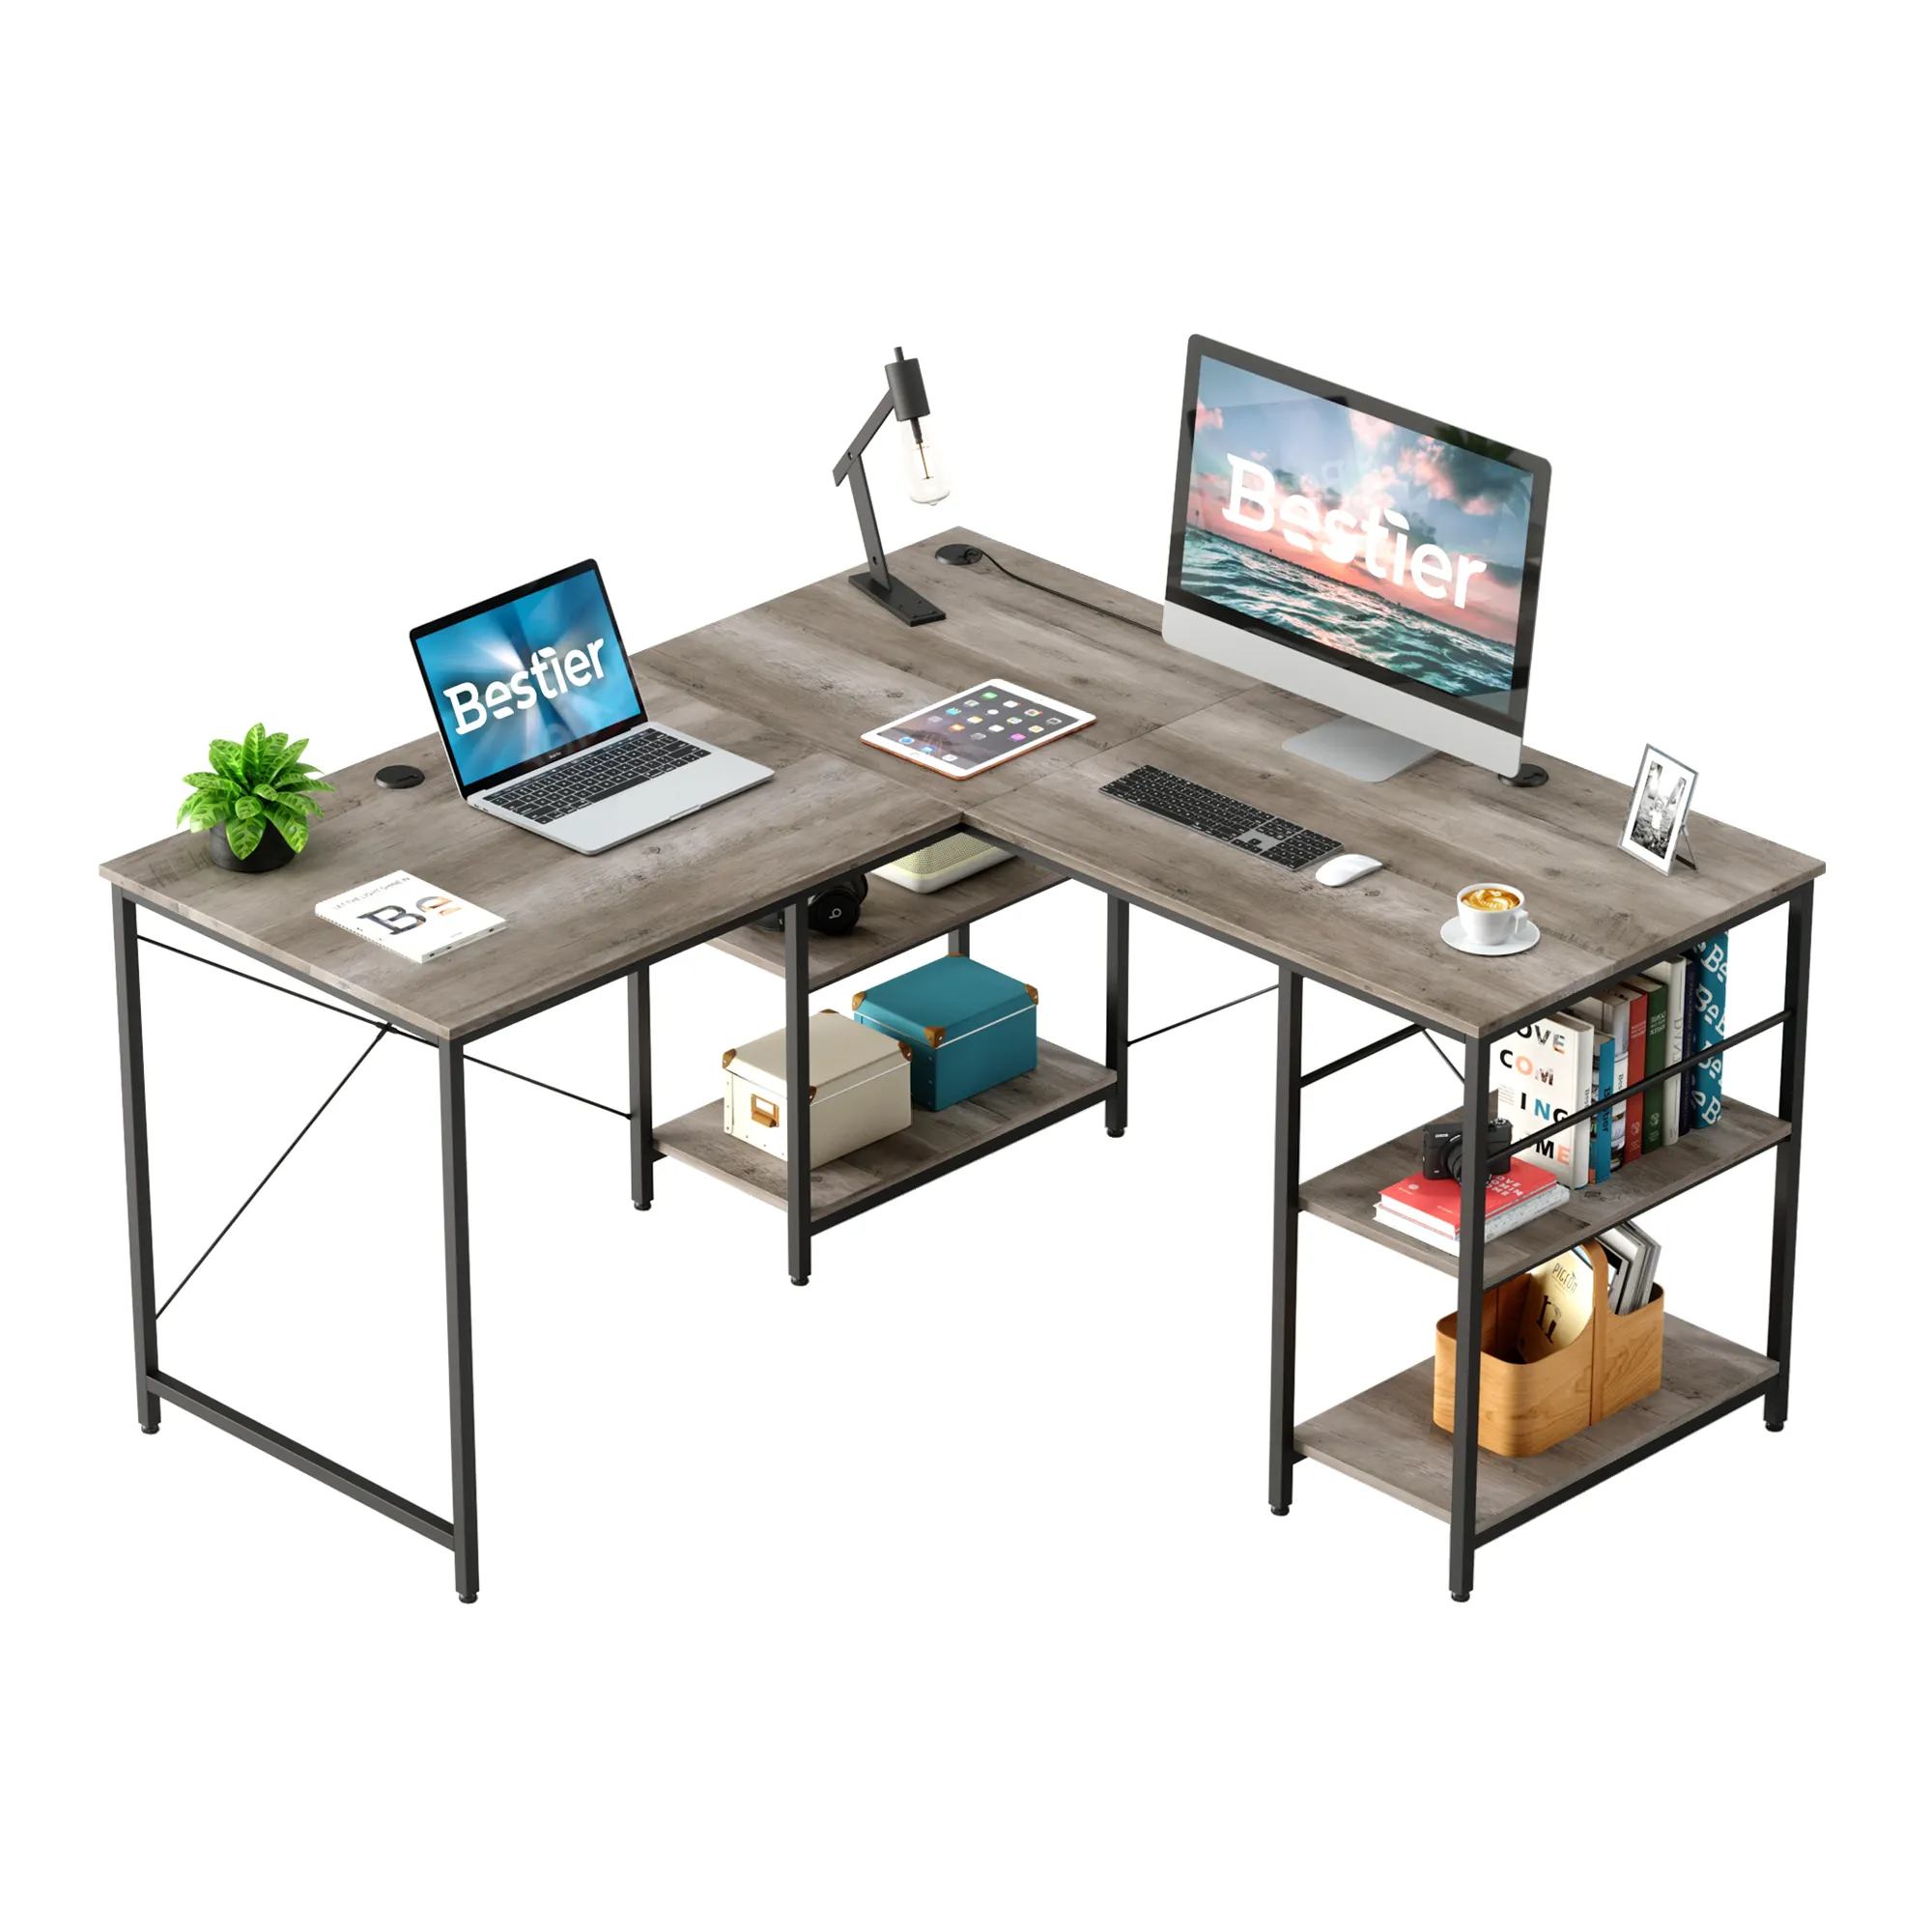 BESTIER Gewerbliche Büromöbel aus Holz moderne modulare L-Form Länge verstellbar Director Manager Ecke Executive Desk